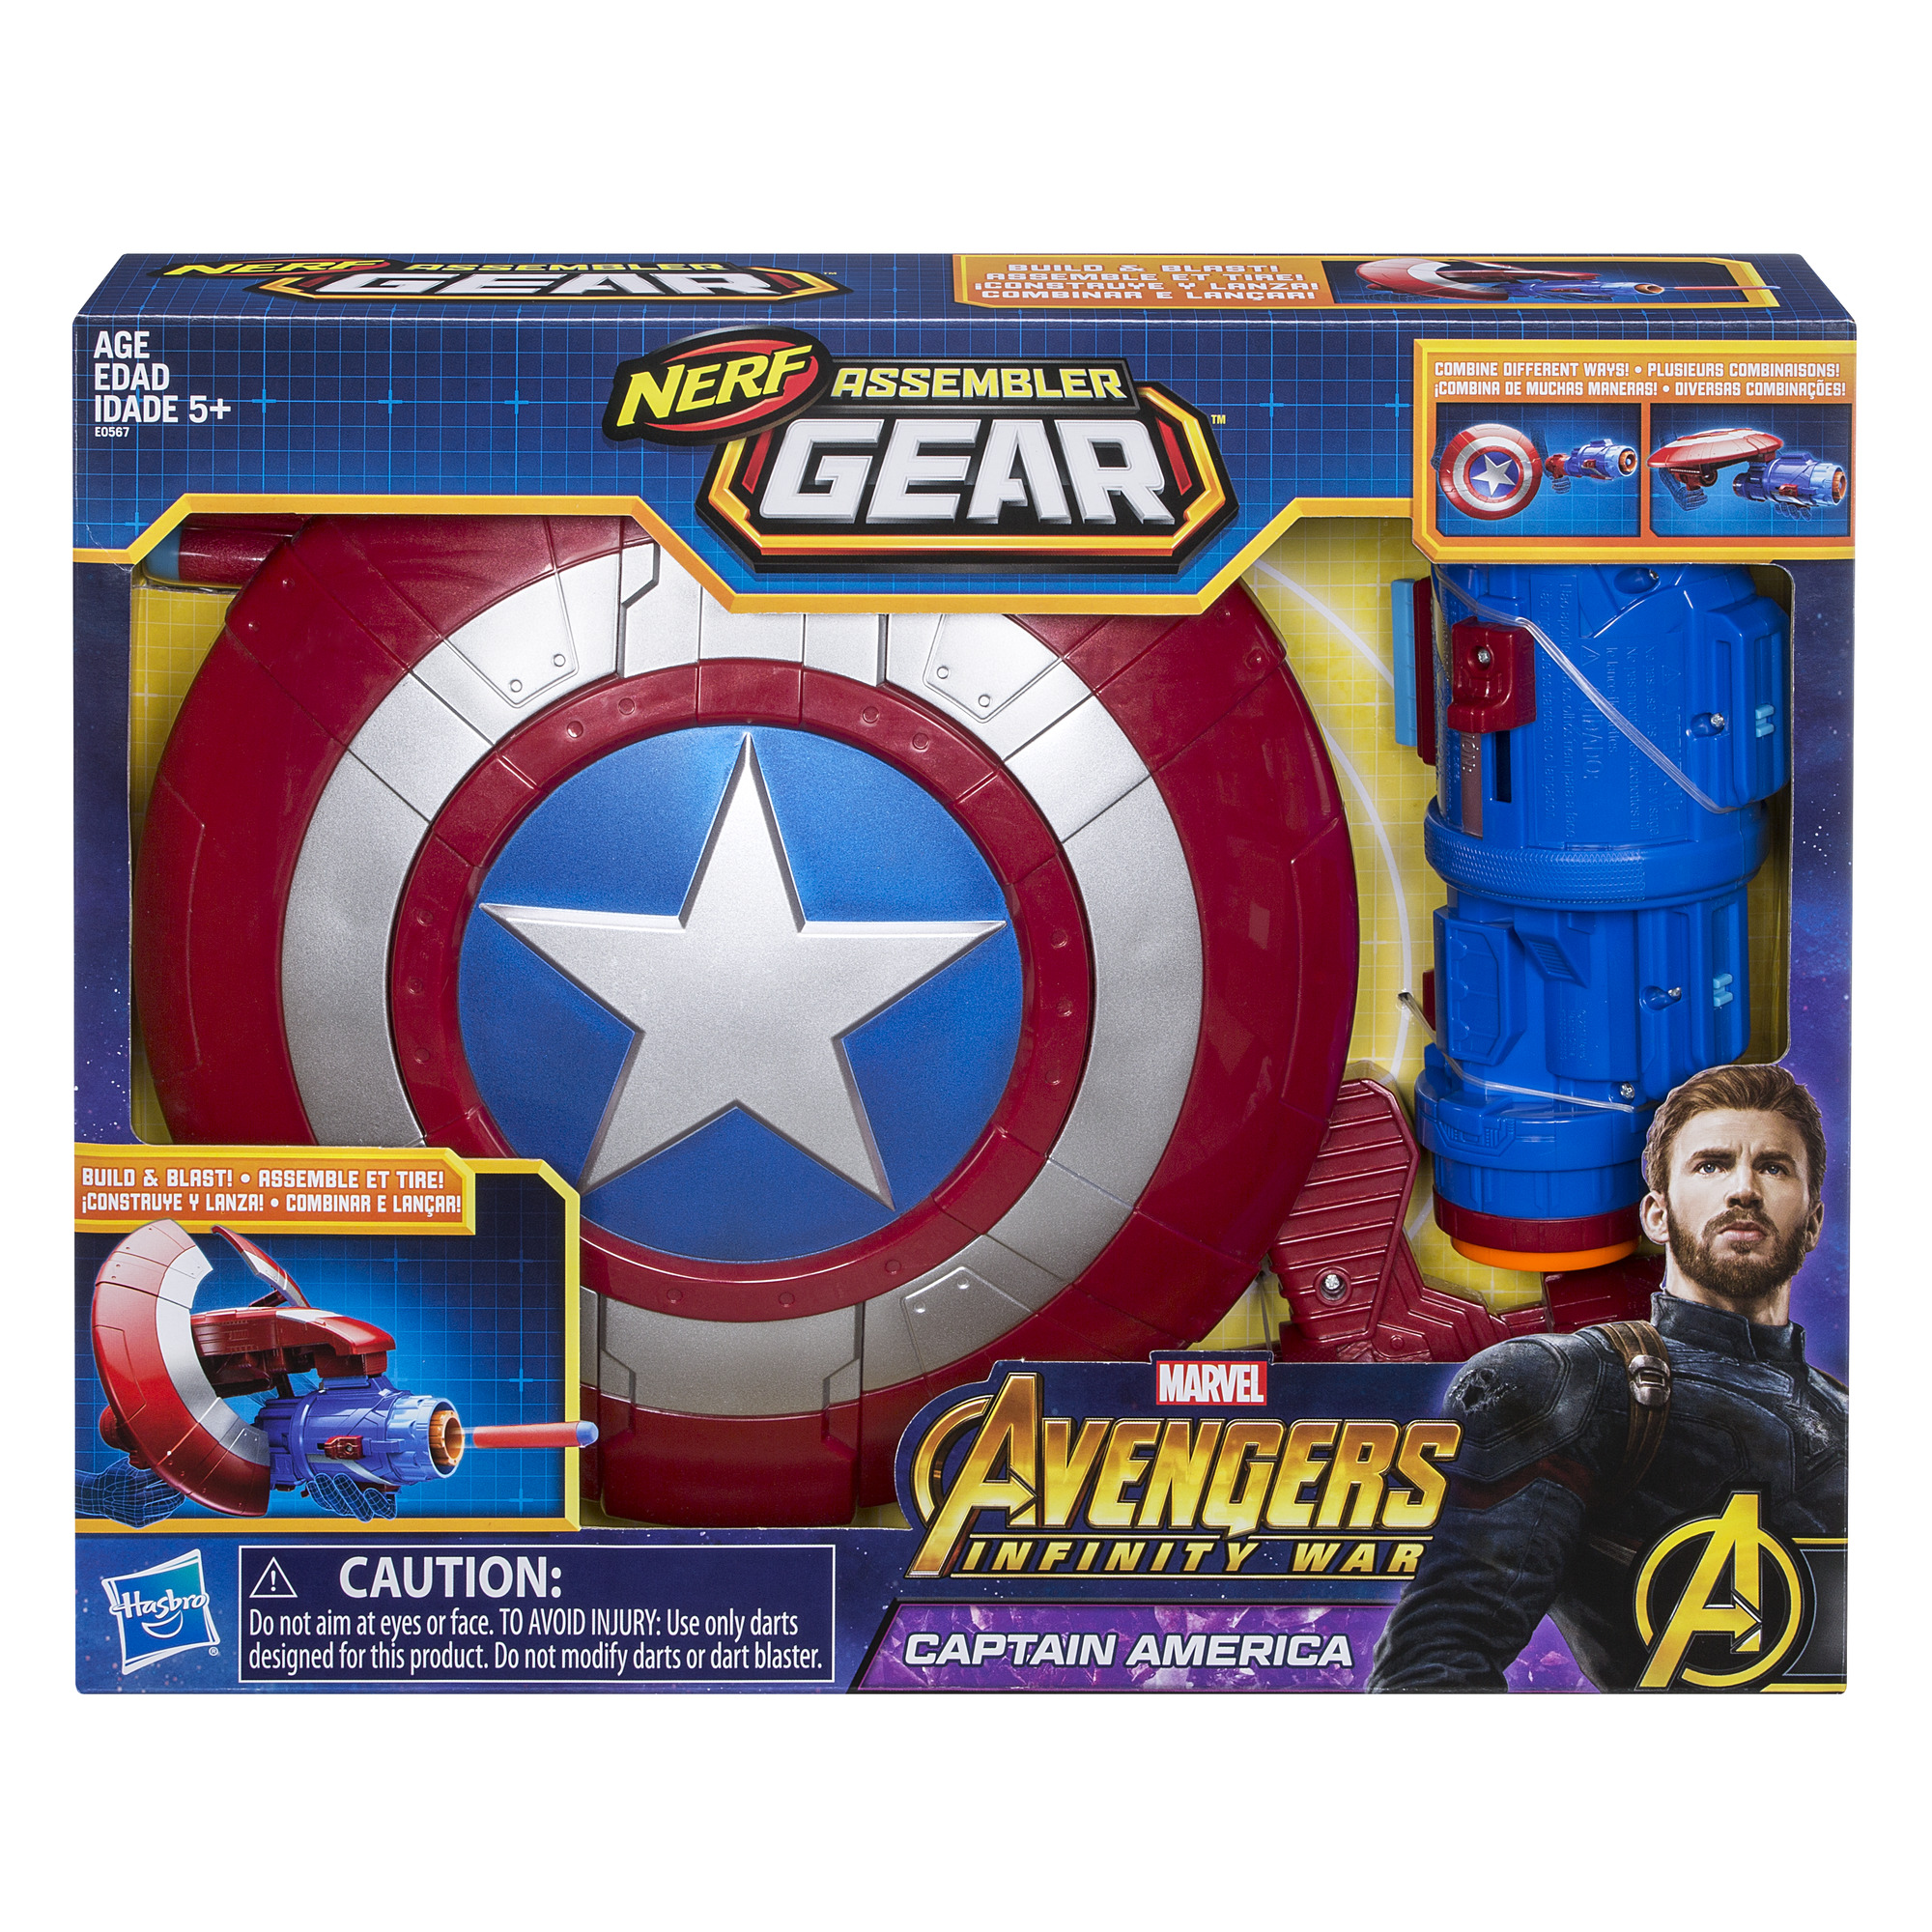 Marvel Avengers: Infinity War Nerf Captain America Assembler Gear - image 2 of 9